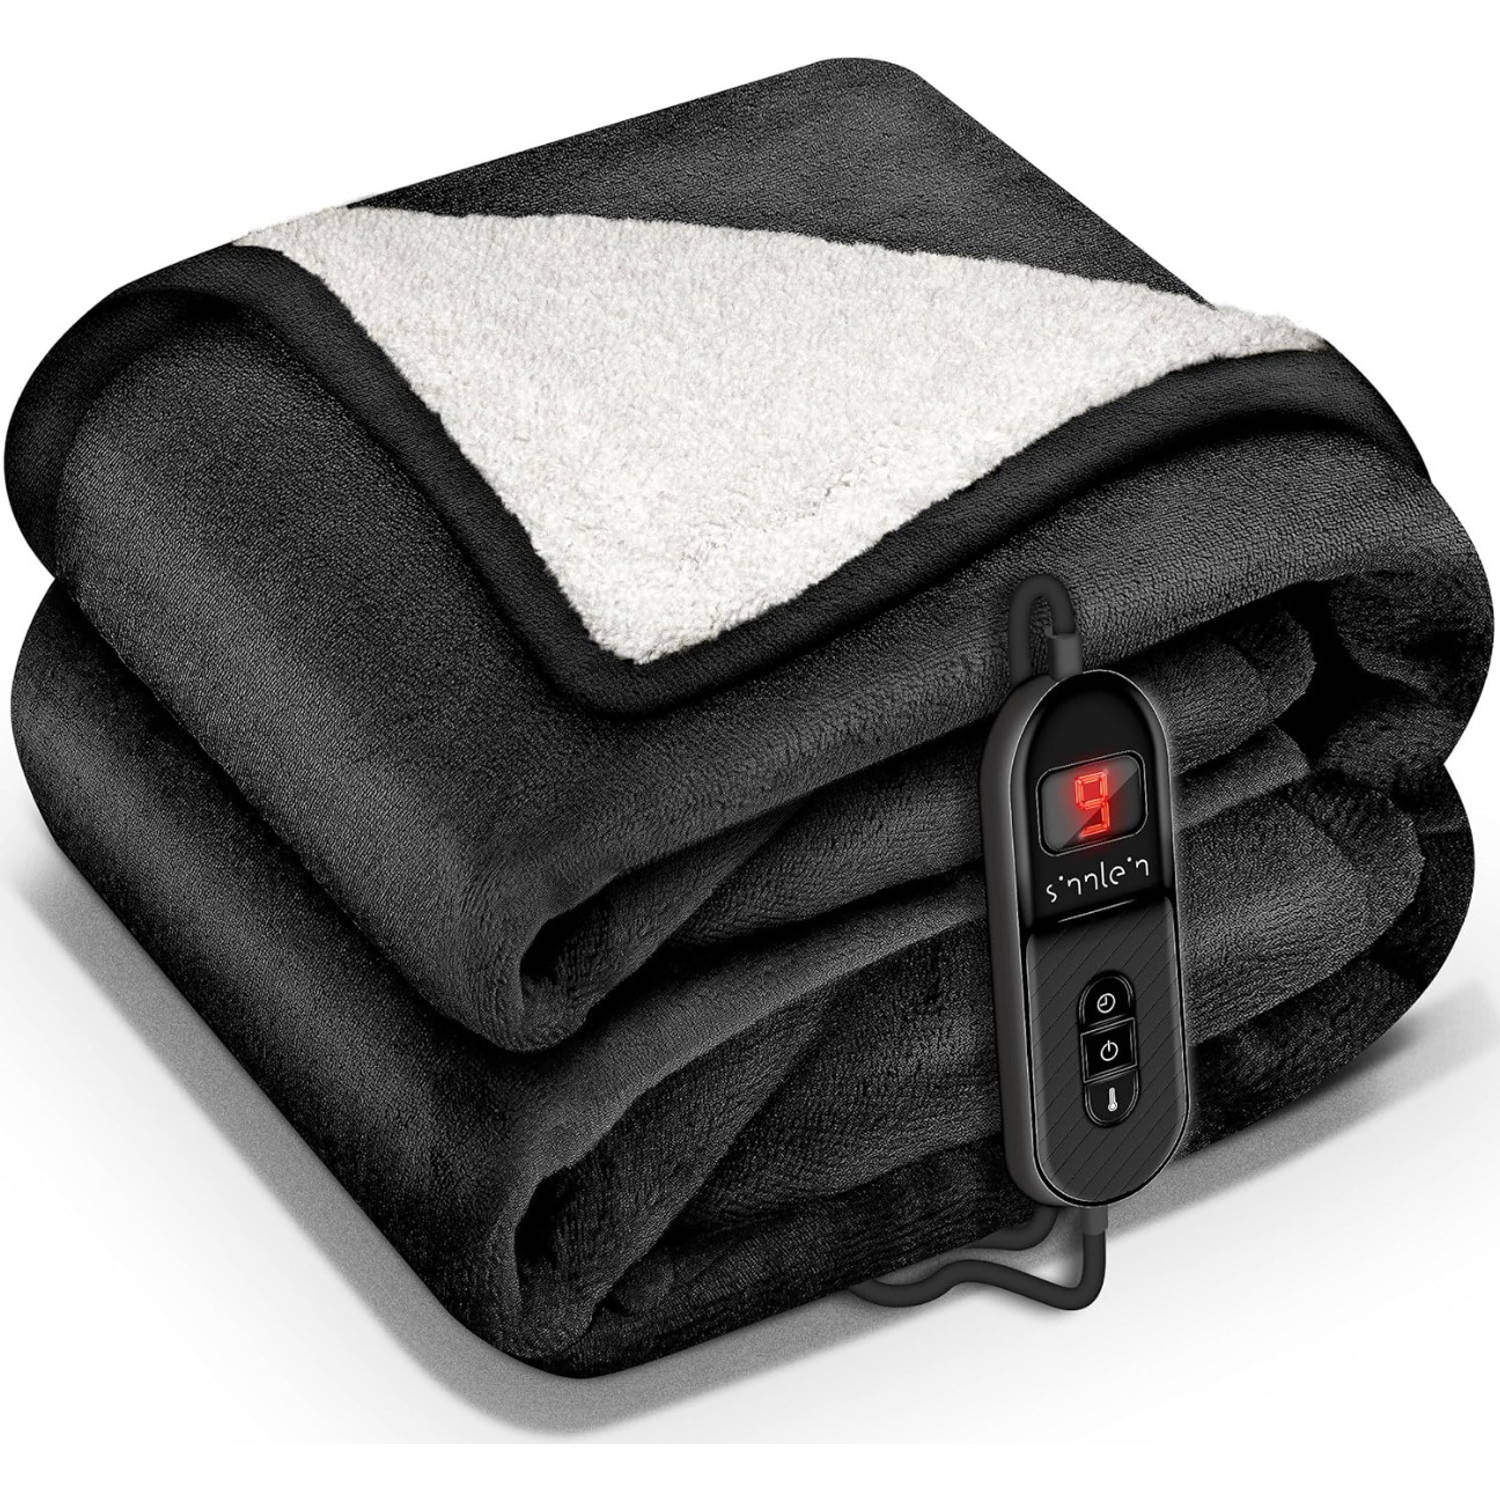 Sinnlein- Elektrische deken met automatische uitschakeling, zwart, 160x120 cm, warmtedeken met 9 temperatuurniveaus,...